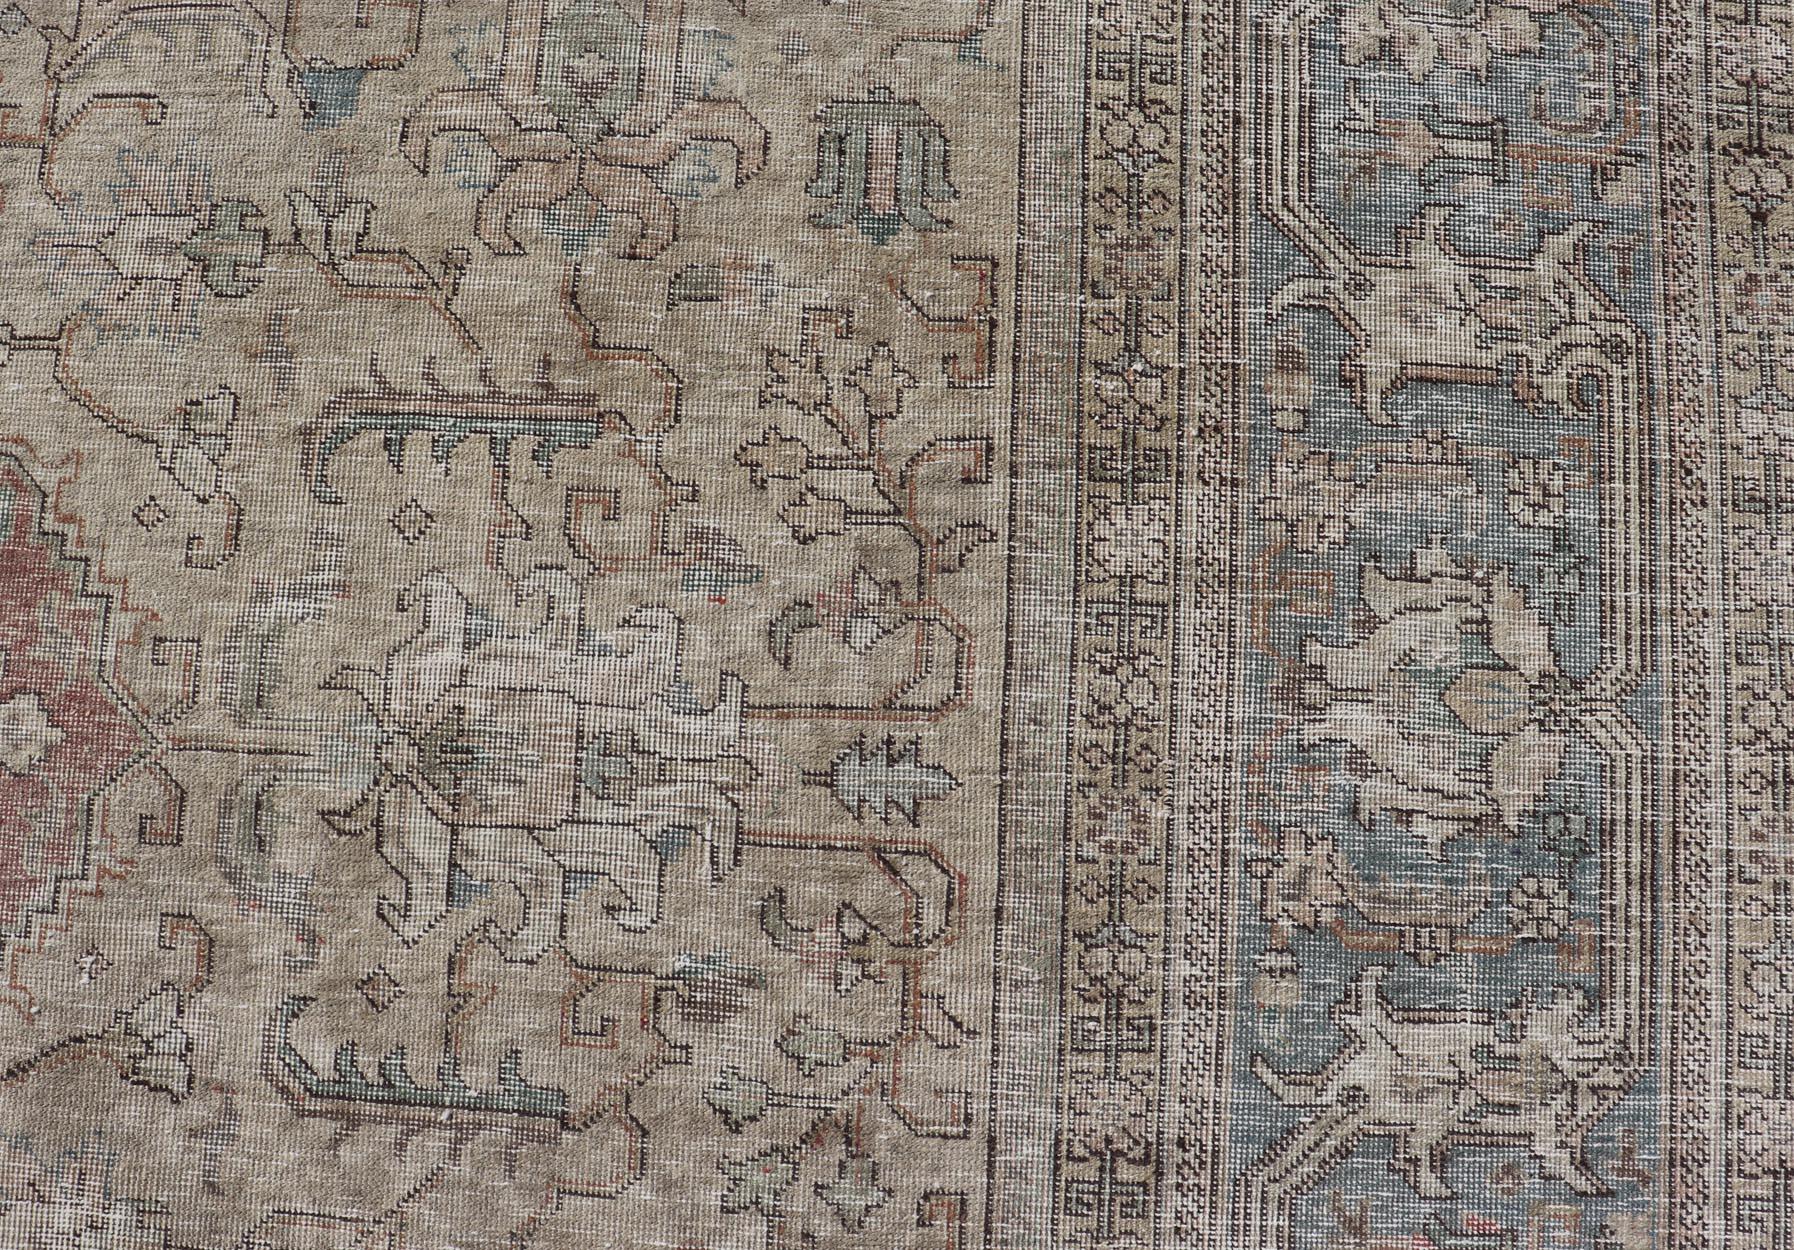 Gedämpfter persischer Täbriz-Teppich mit großem Stammesmedaillon in erdigen Tönen. Vintage Distressed Perserteppich. Keivan Woven Arts / Teppich CRV-10056227, Herkunftsland / Art: Iran / Täbris, um 1940

Maße: 10'0 x 12'4 

Dieser handgewebte